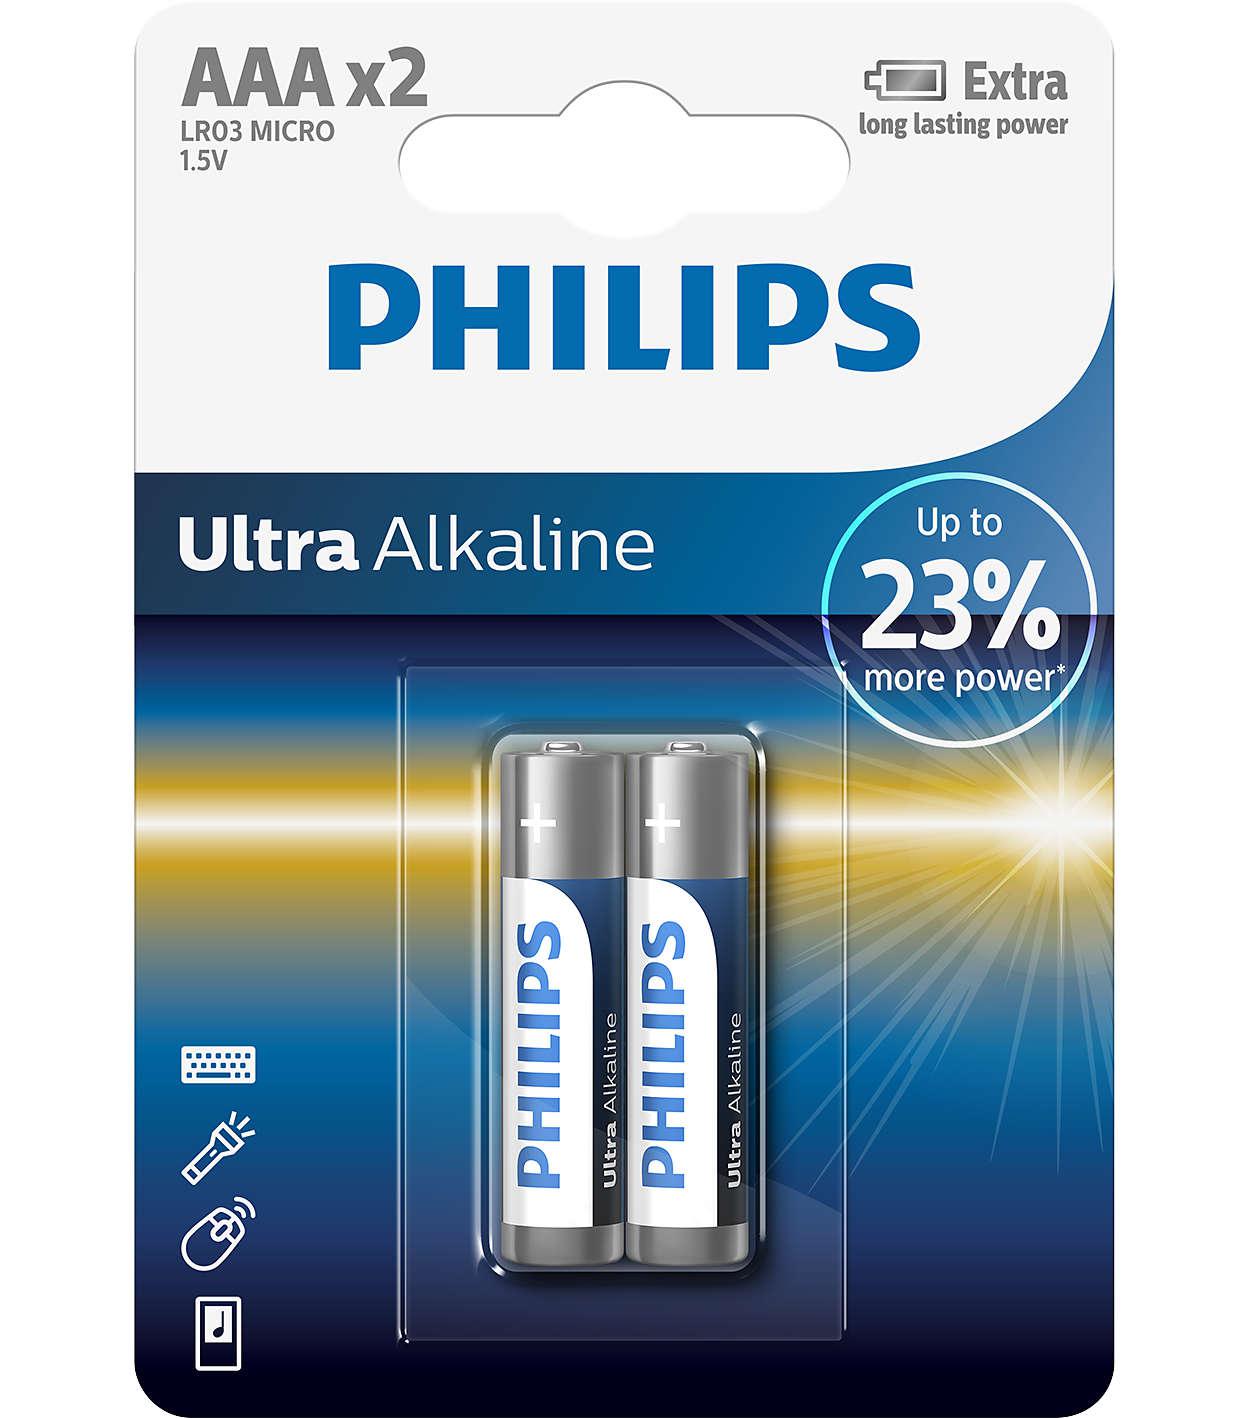 LR03 Ultra Alkaline B2, Baterie philips ultra alkaline aaa b2 (set 2 buc.),
